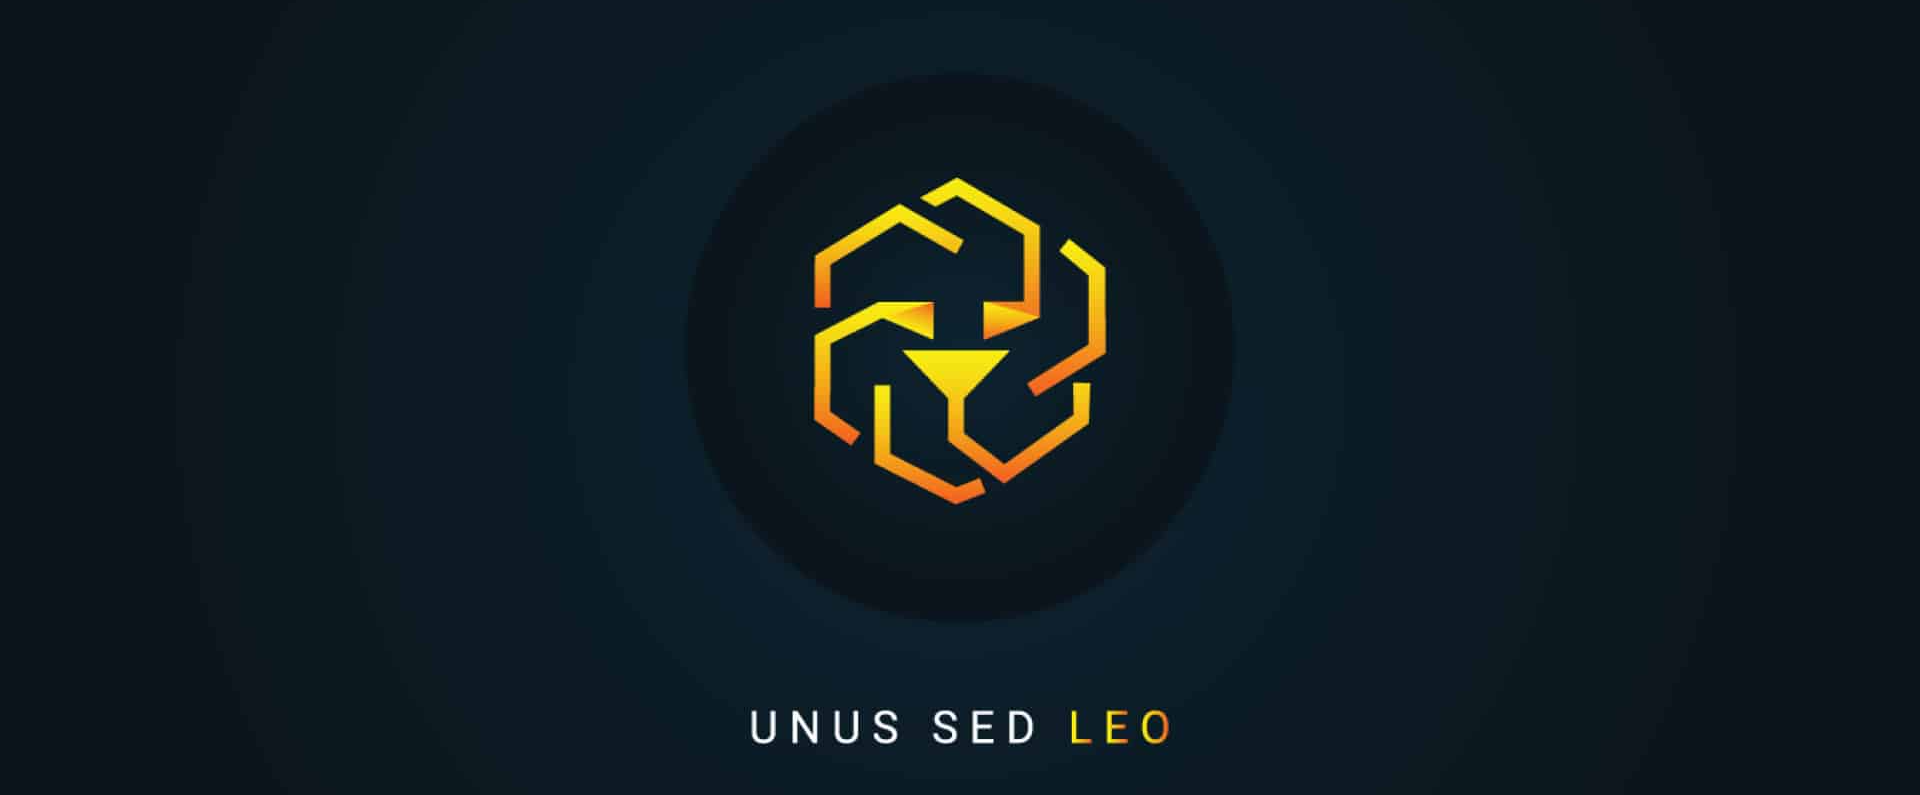 Что такое криптовалюта UNUS SED LEO?